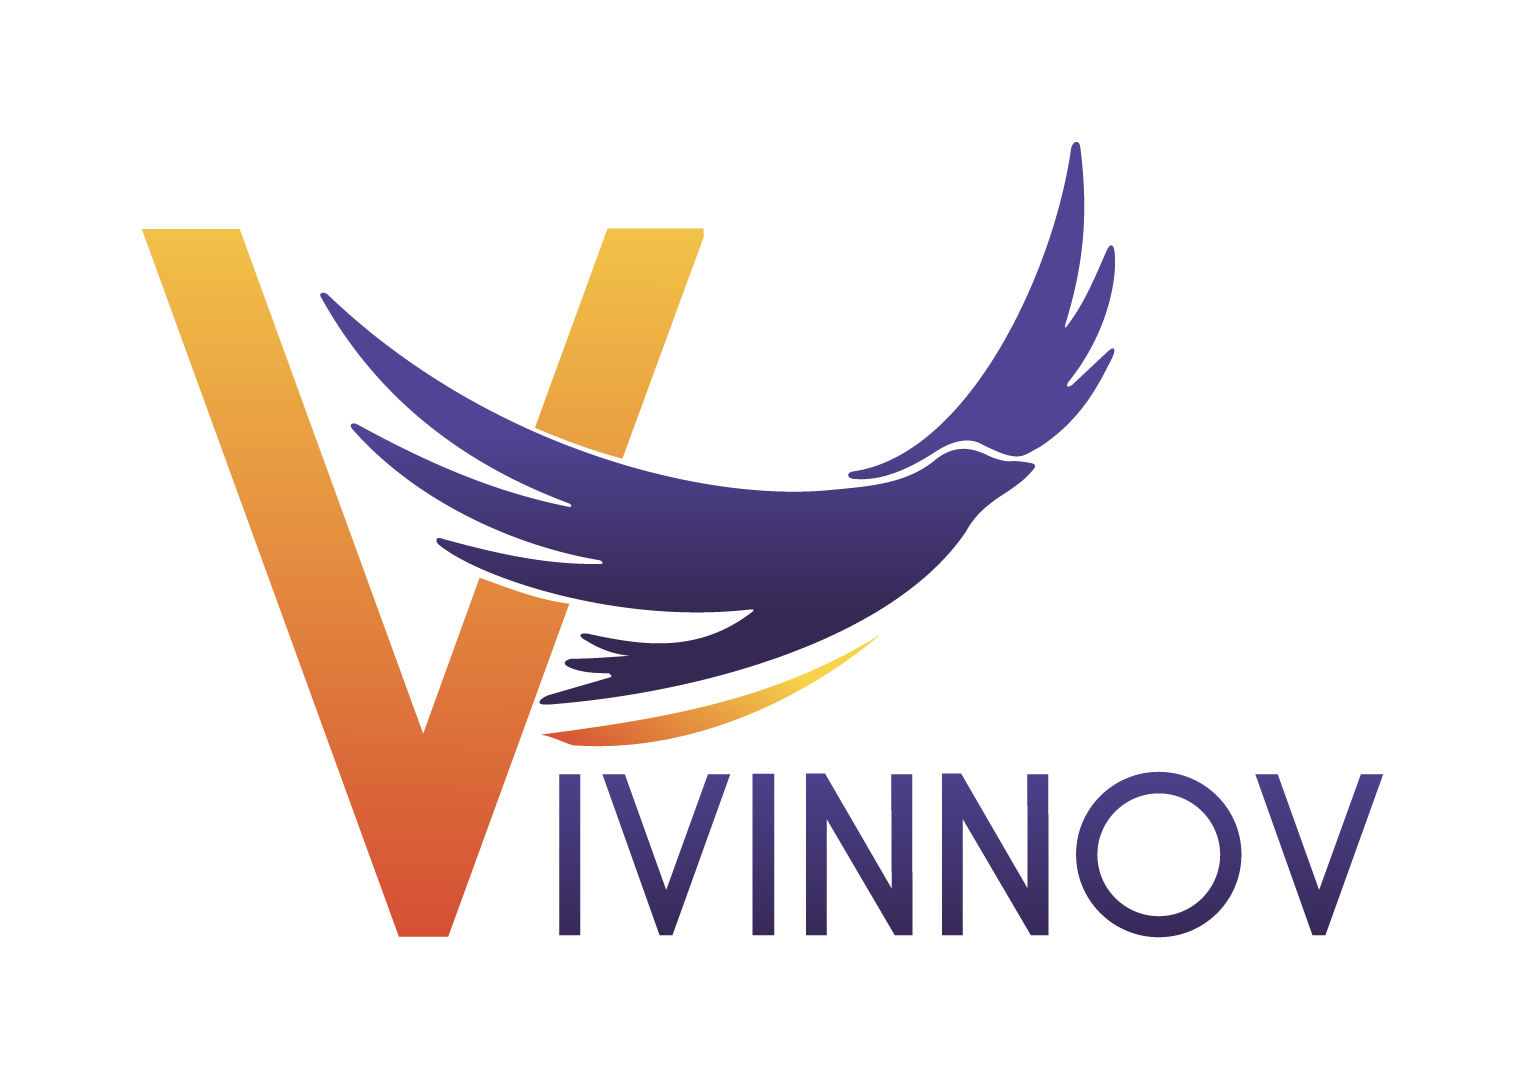 Vivinnov